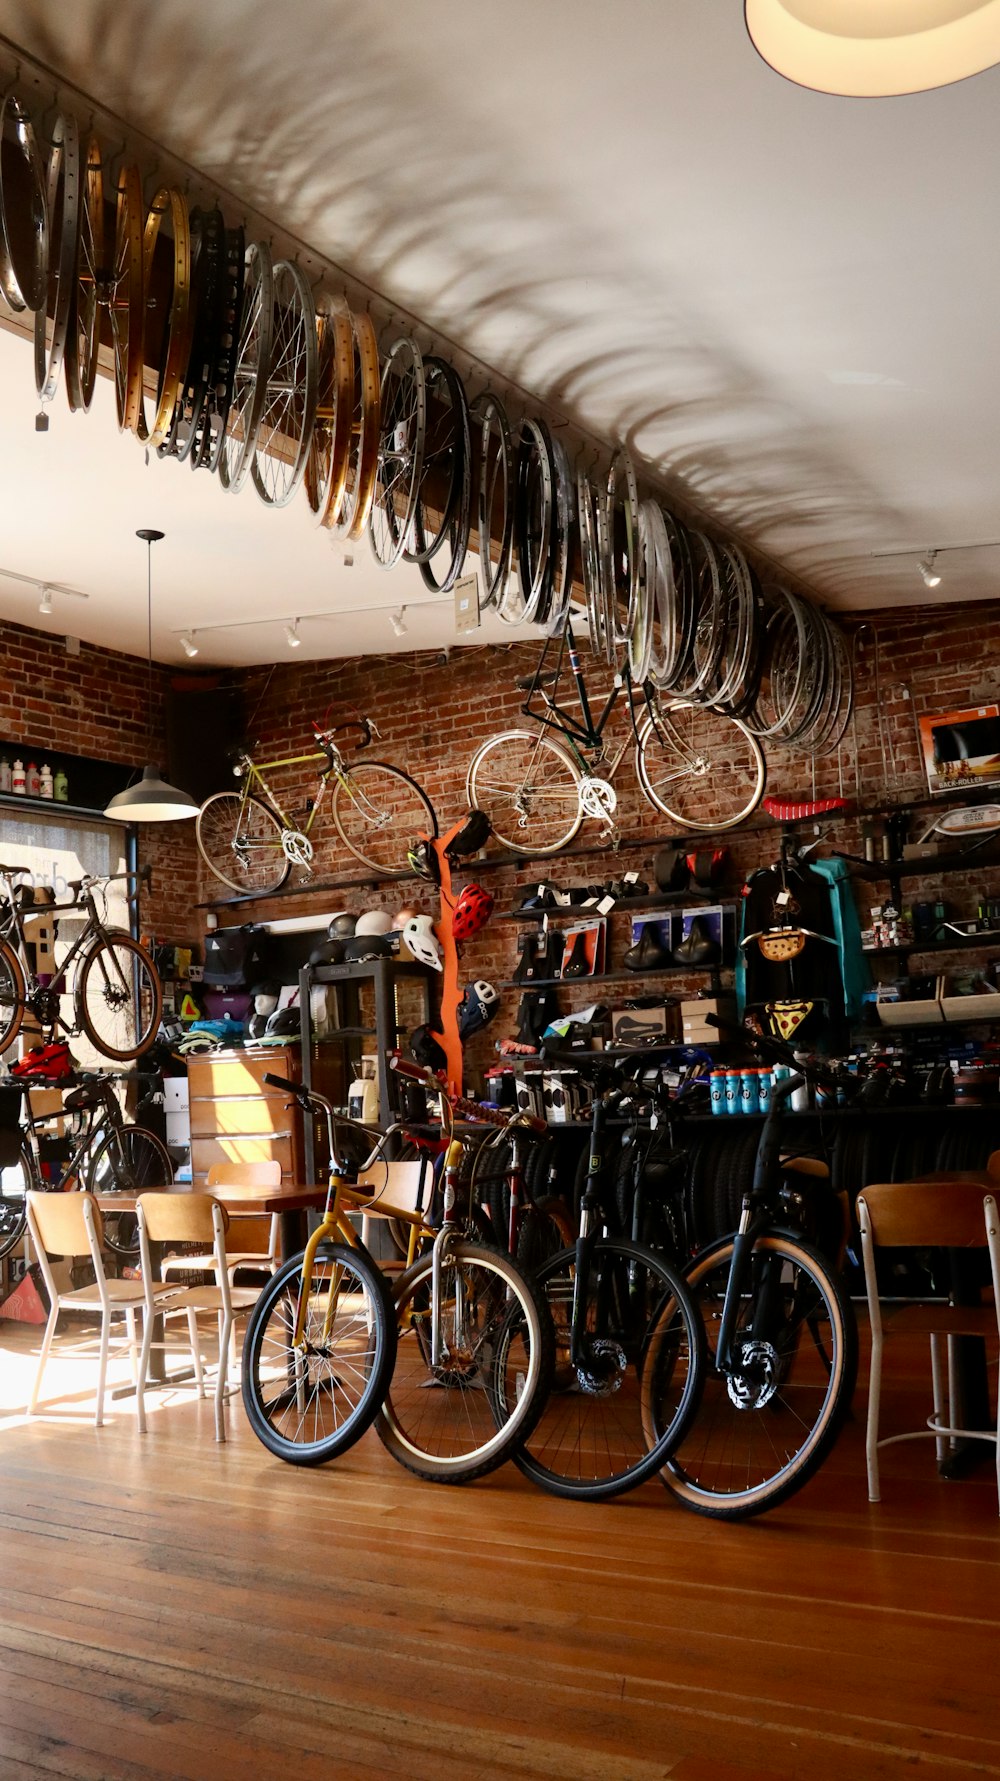 Fahrrad neben braunem Holztisch abgestellt